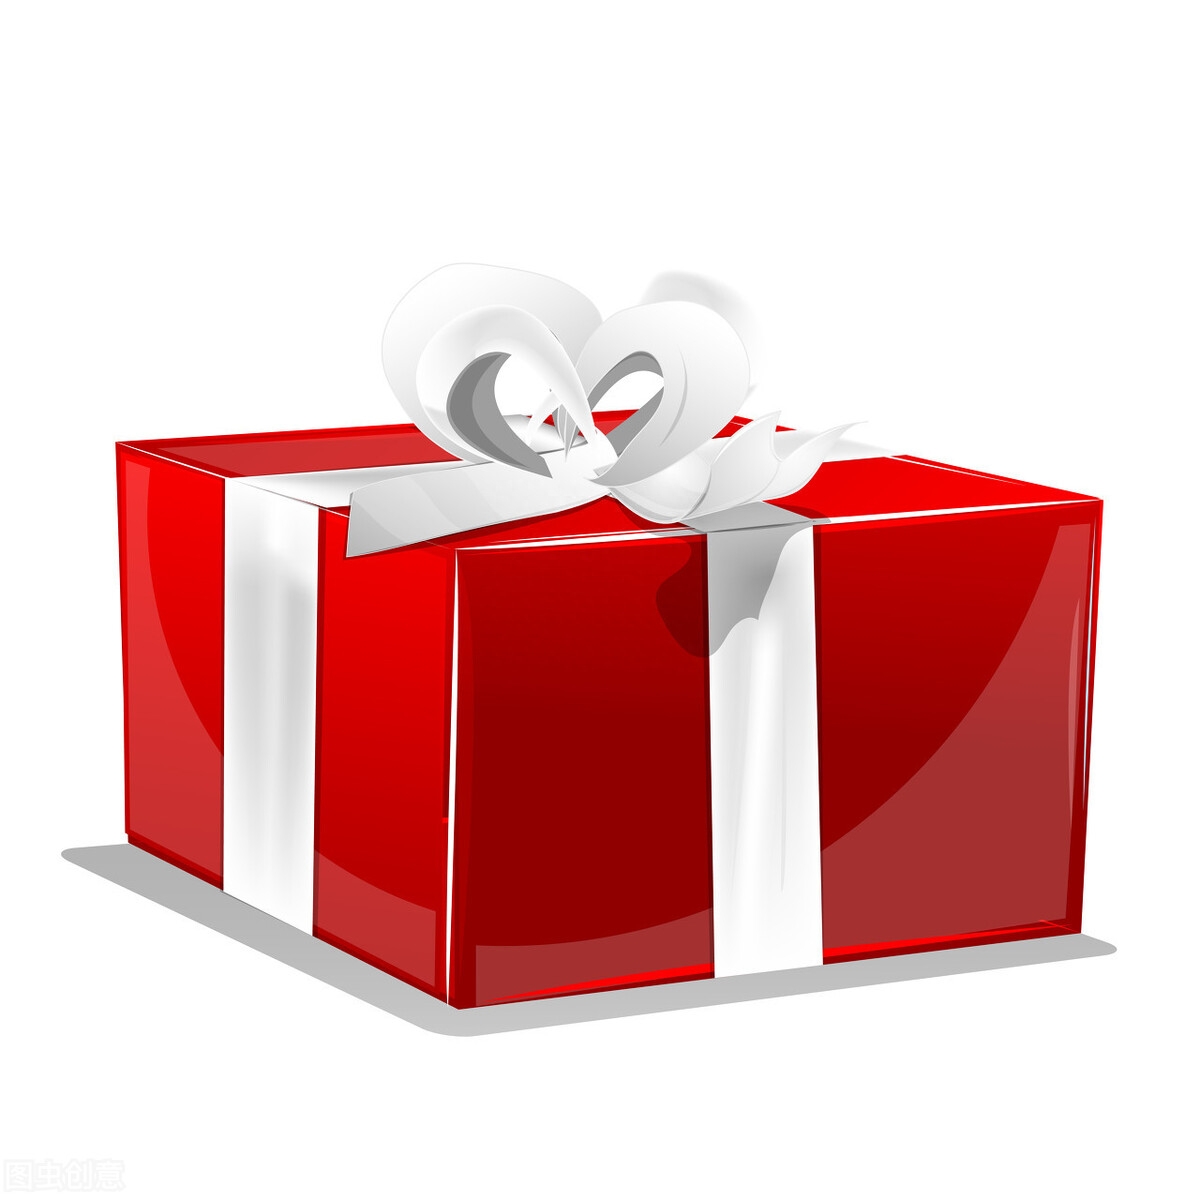 礼品代发快递件礼品网有什么好处_快递礼品代发是什么意思_礼品代发网安全吗